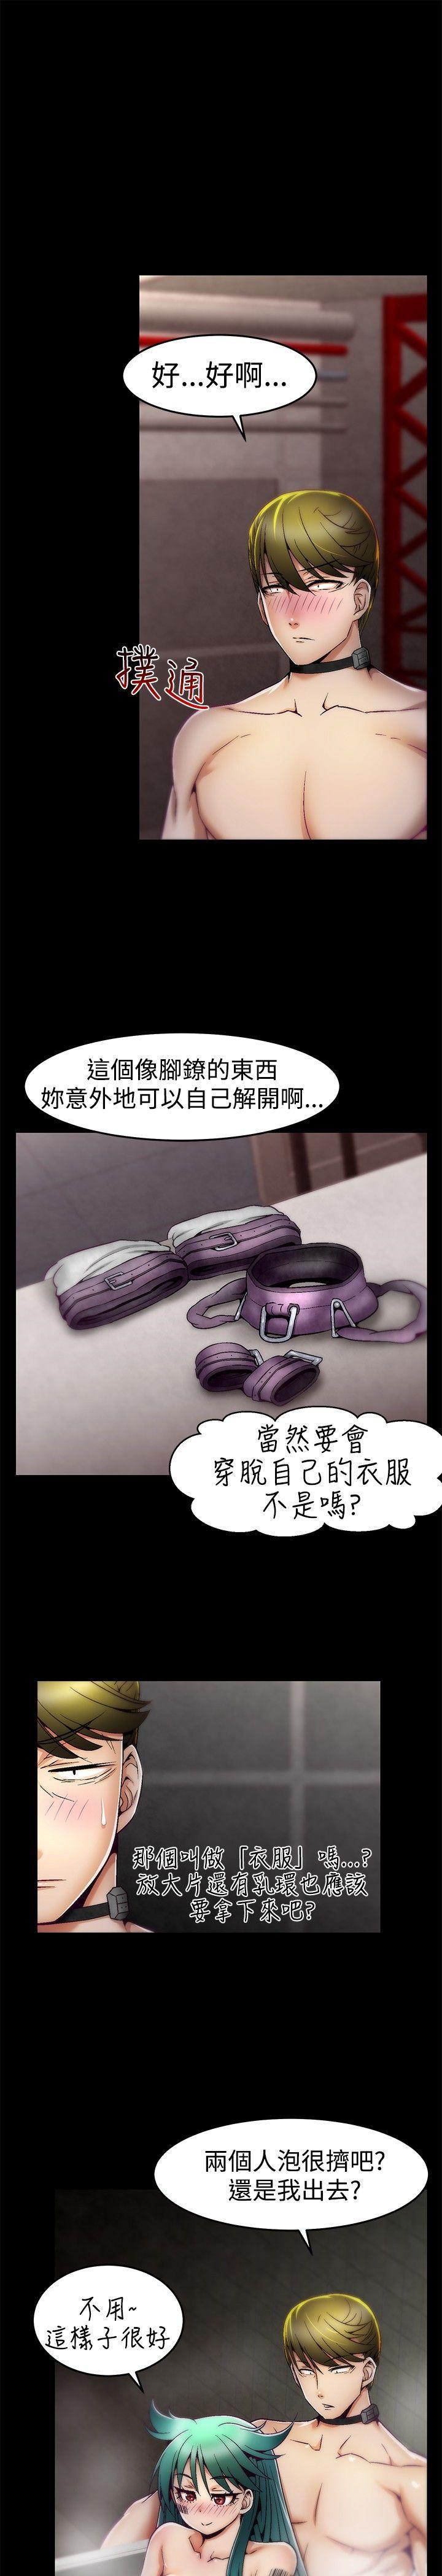 韩国污漫画 啪啪啪調教所 第6话 18